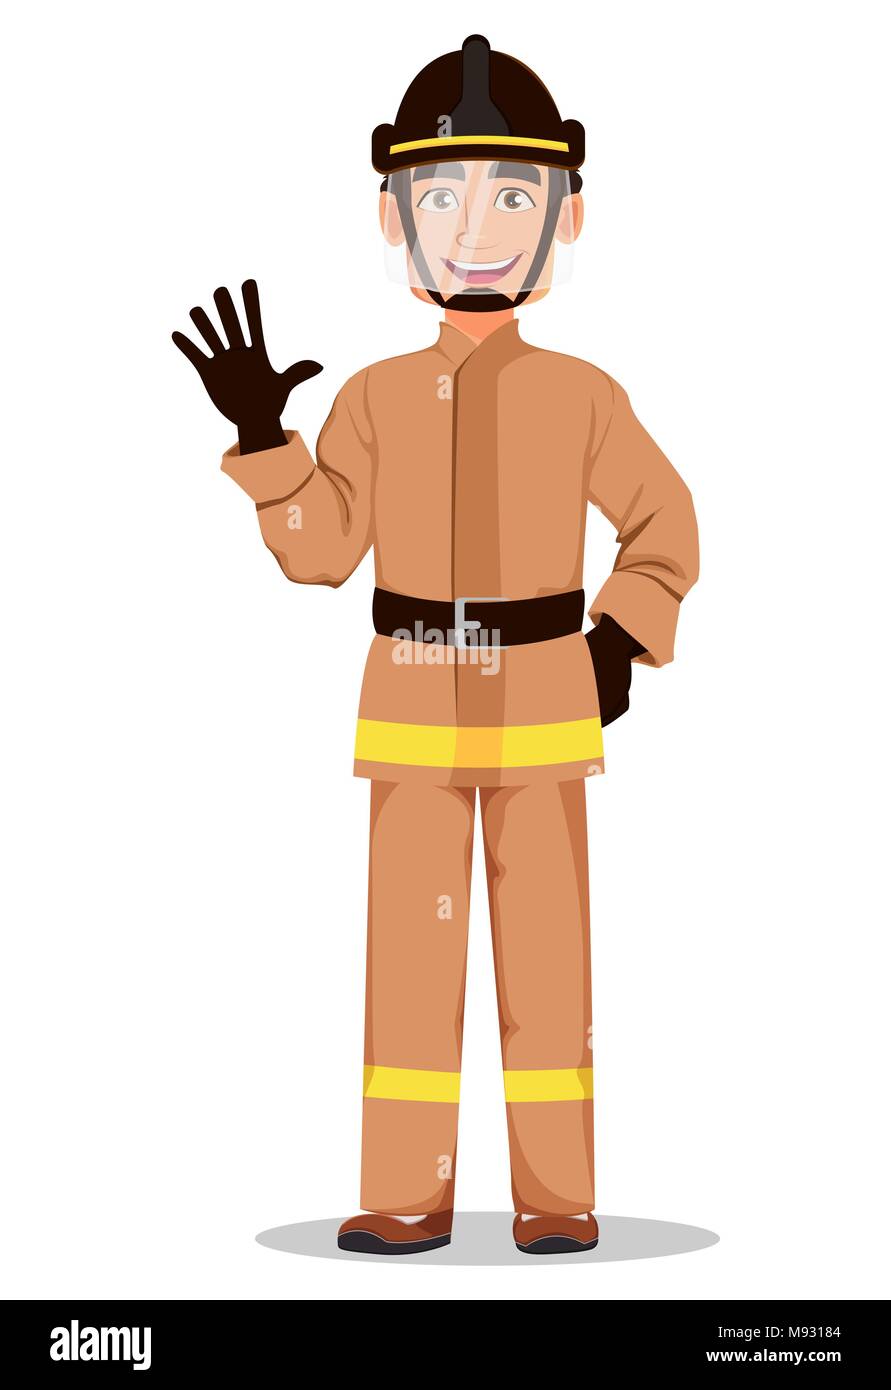 Fireman cartoon immagini e fotografie stock ad alta risoluzione - Alamy